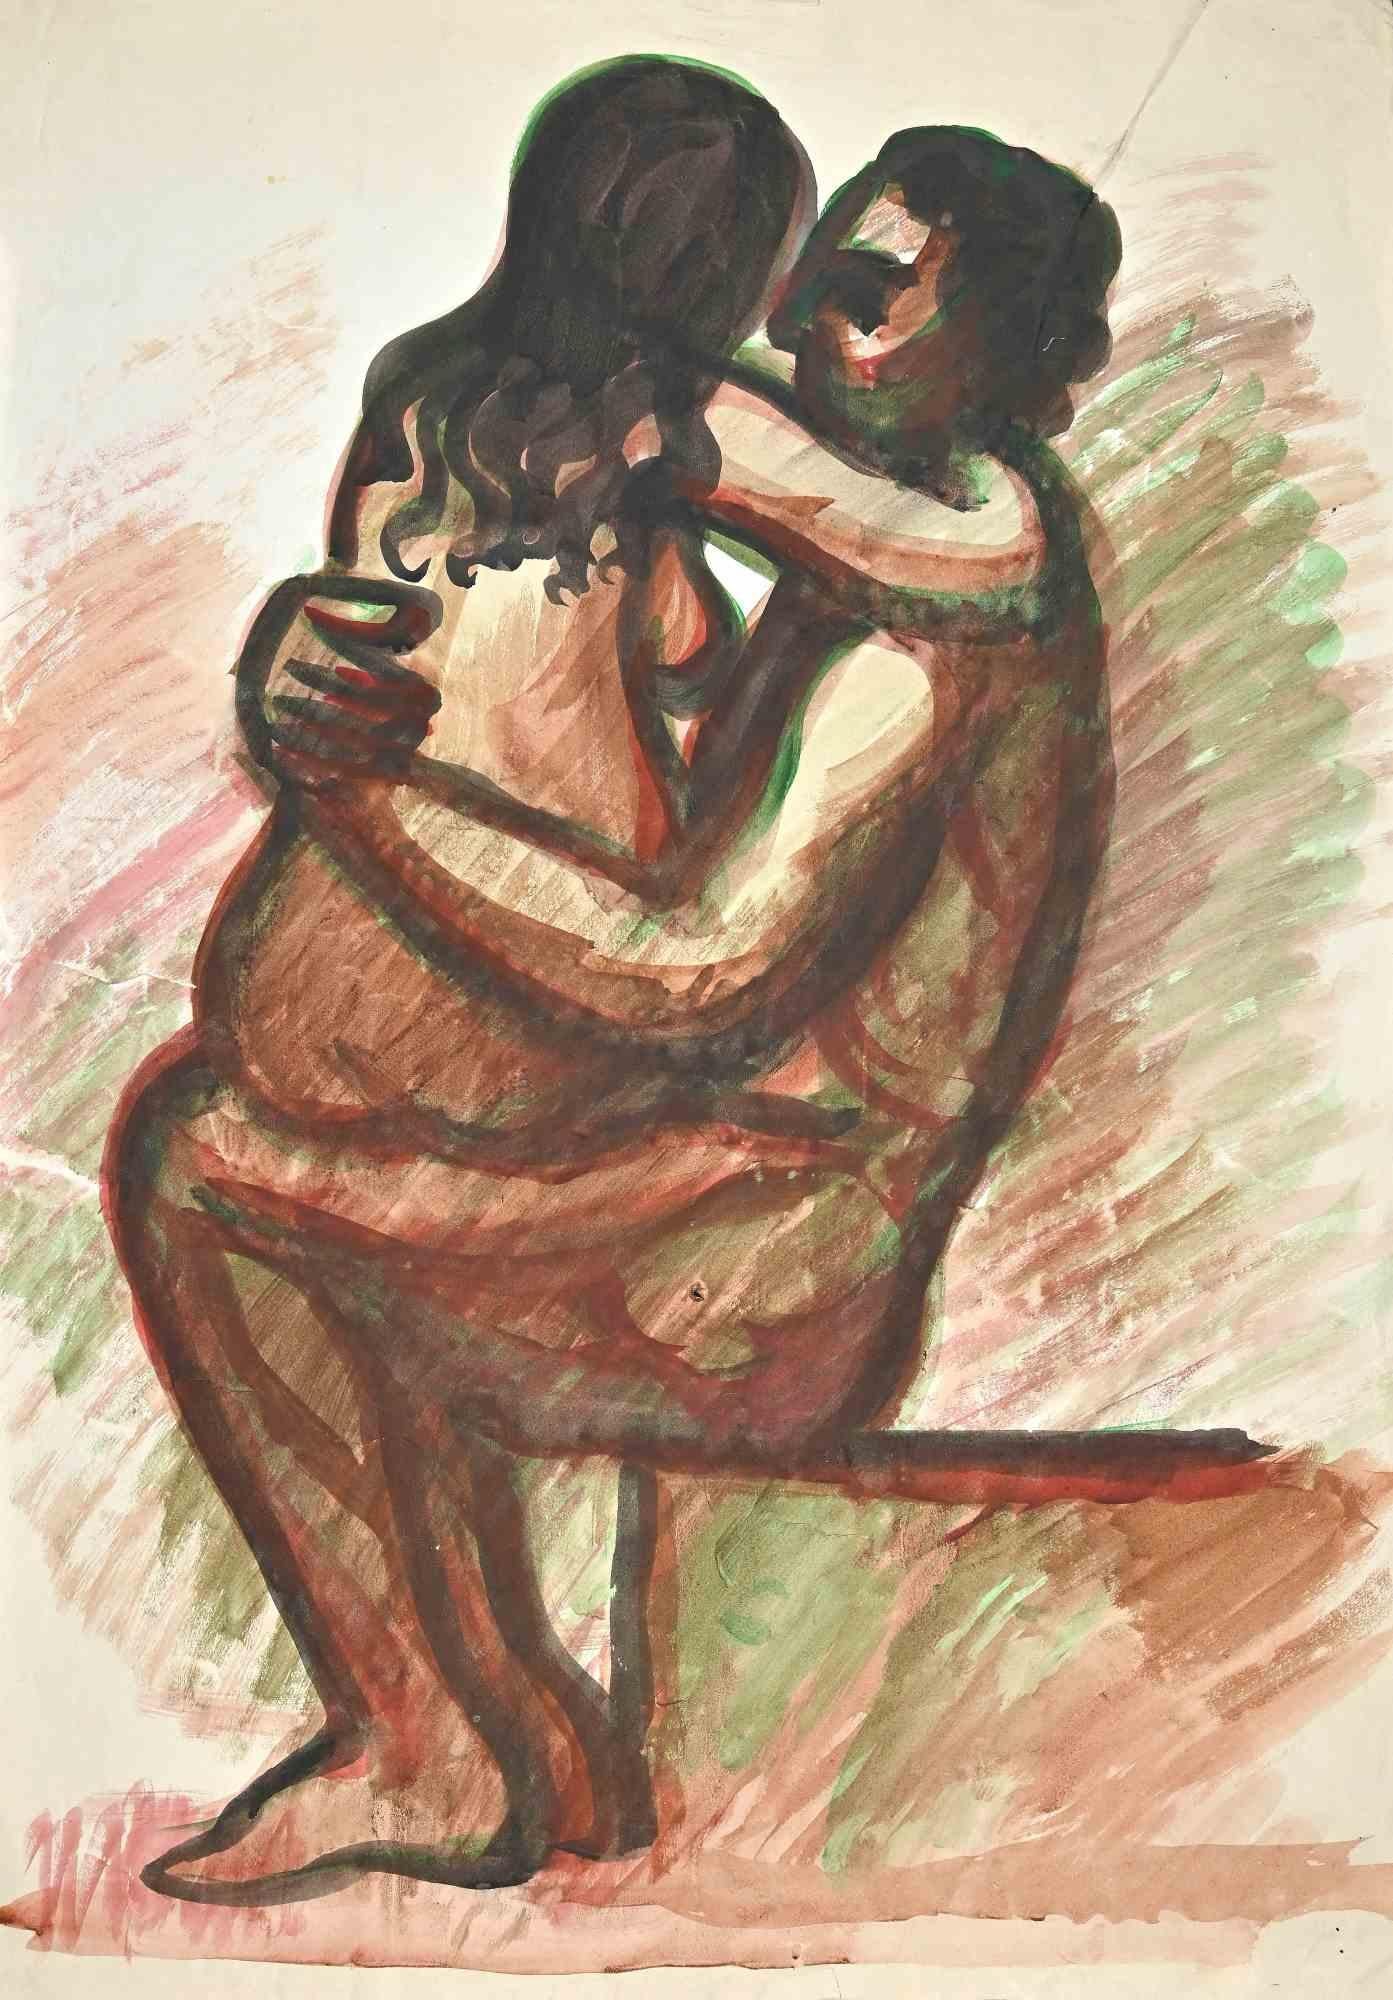 Amour est un dessin à l'aquarelle réalisé au milieu du 20e siècle par Jean Delpech (1916-1988). 

Bon état sauf pour les pliures et les coupures.

L'œuvre d'art est réalisée par des traits habiles et des couleurs harmonieuses grâce à la